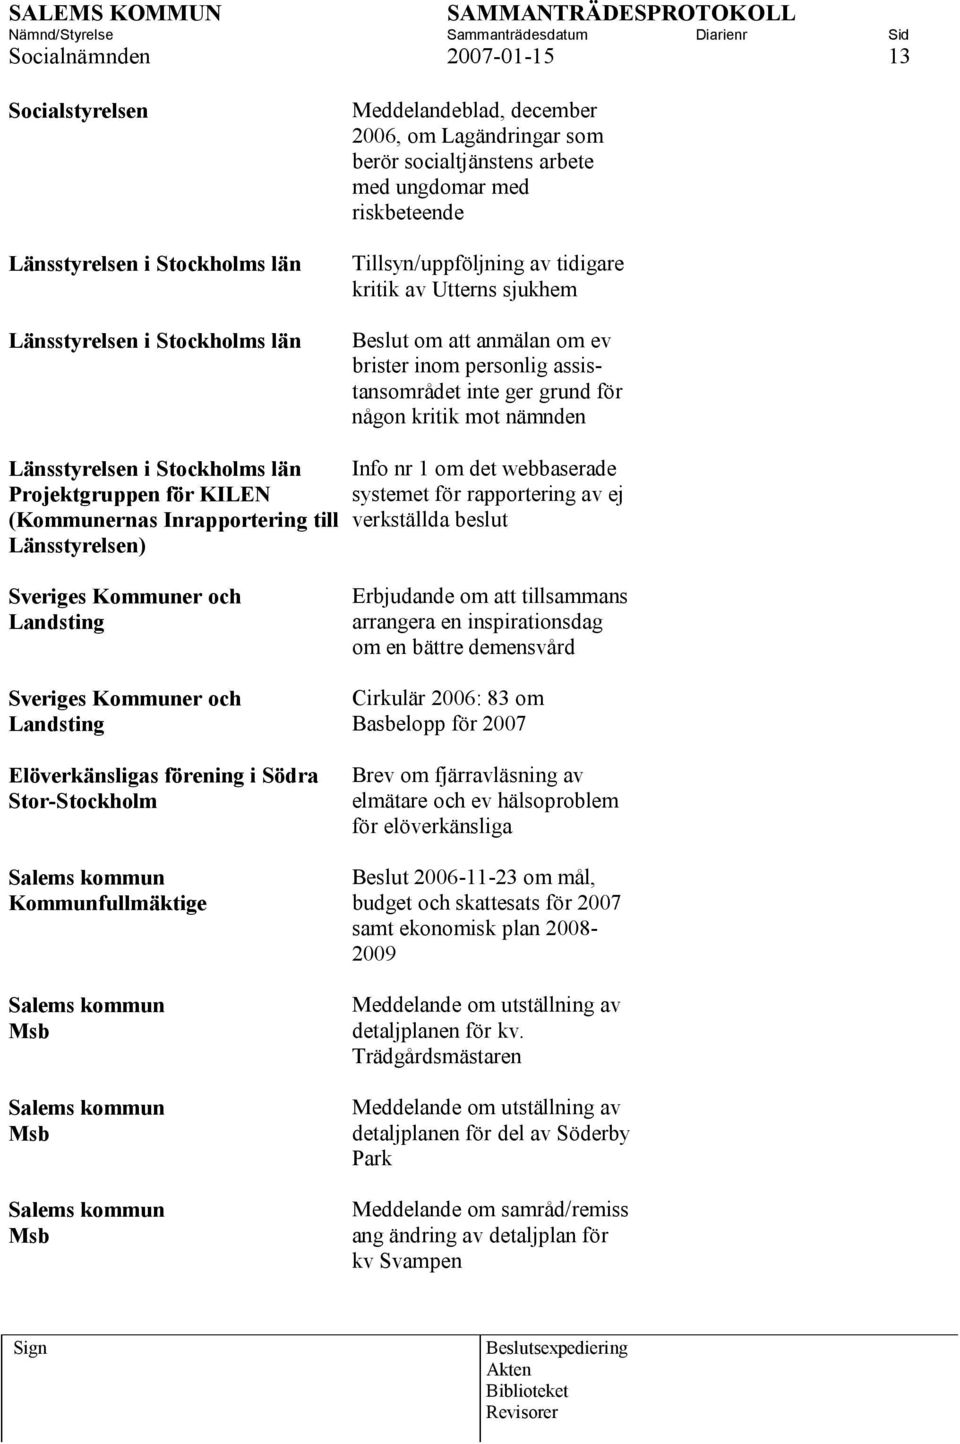 Länsstyrelsen i Stockholms län Projektgruppen för KILEN (Kommunernas Inrapportering till Länsstyrelsen) Info nr 1 om det webbaserade systemet för rapportering av ej verkställda beslut Sveriges